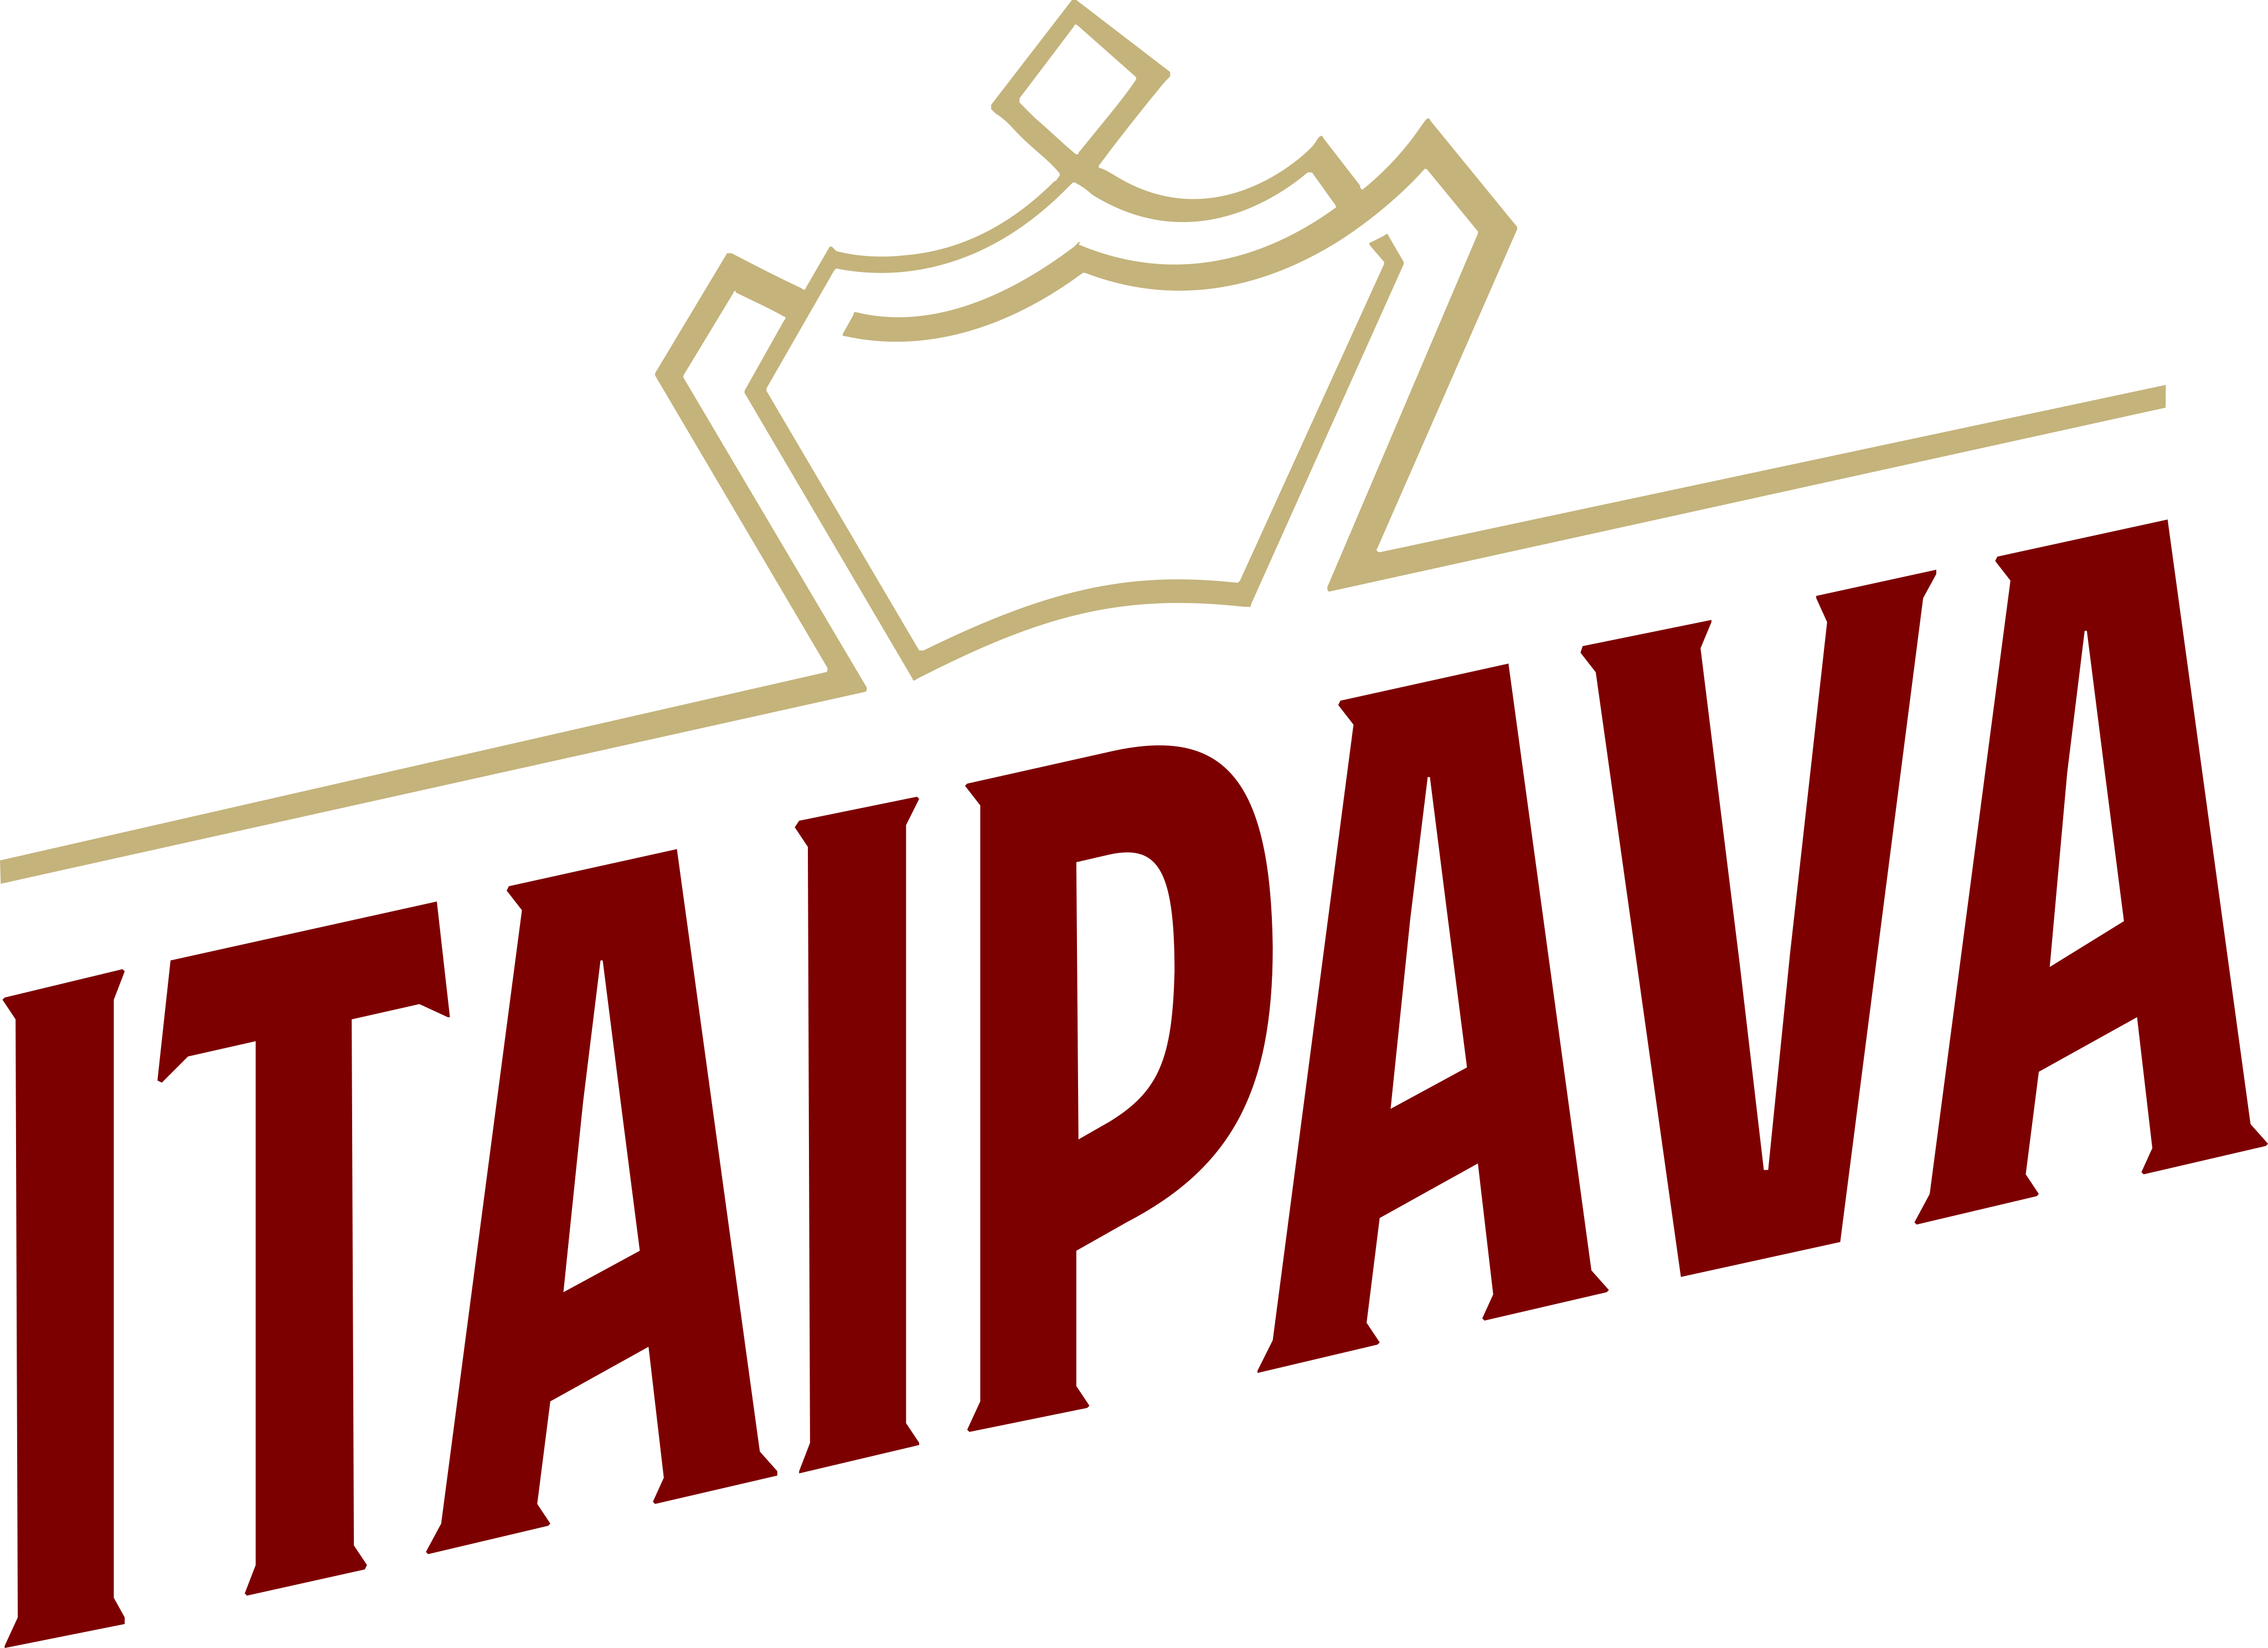 itaipava-logo-1